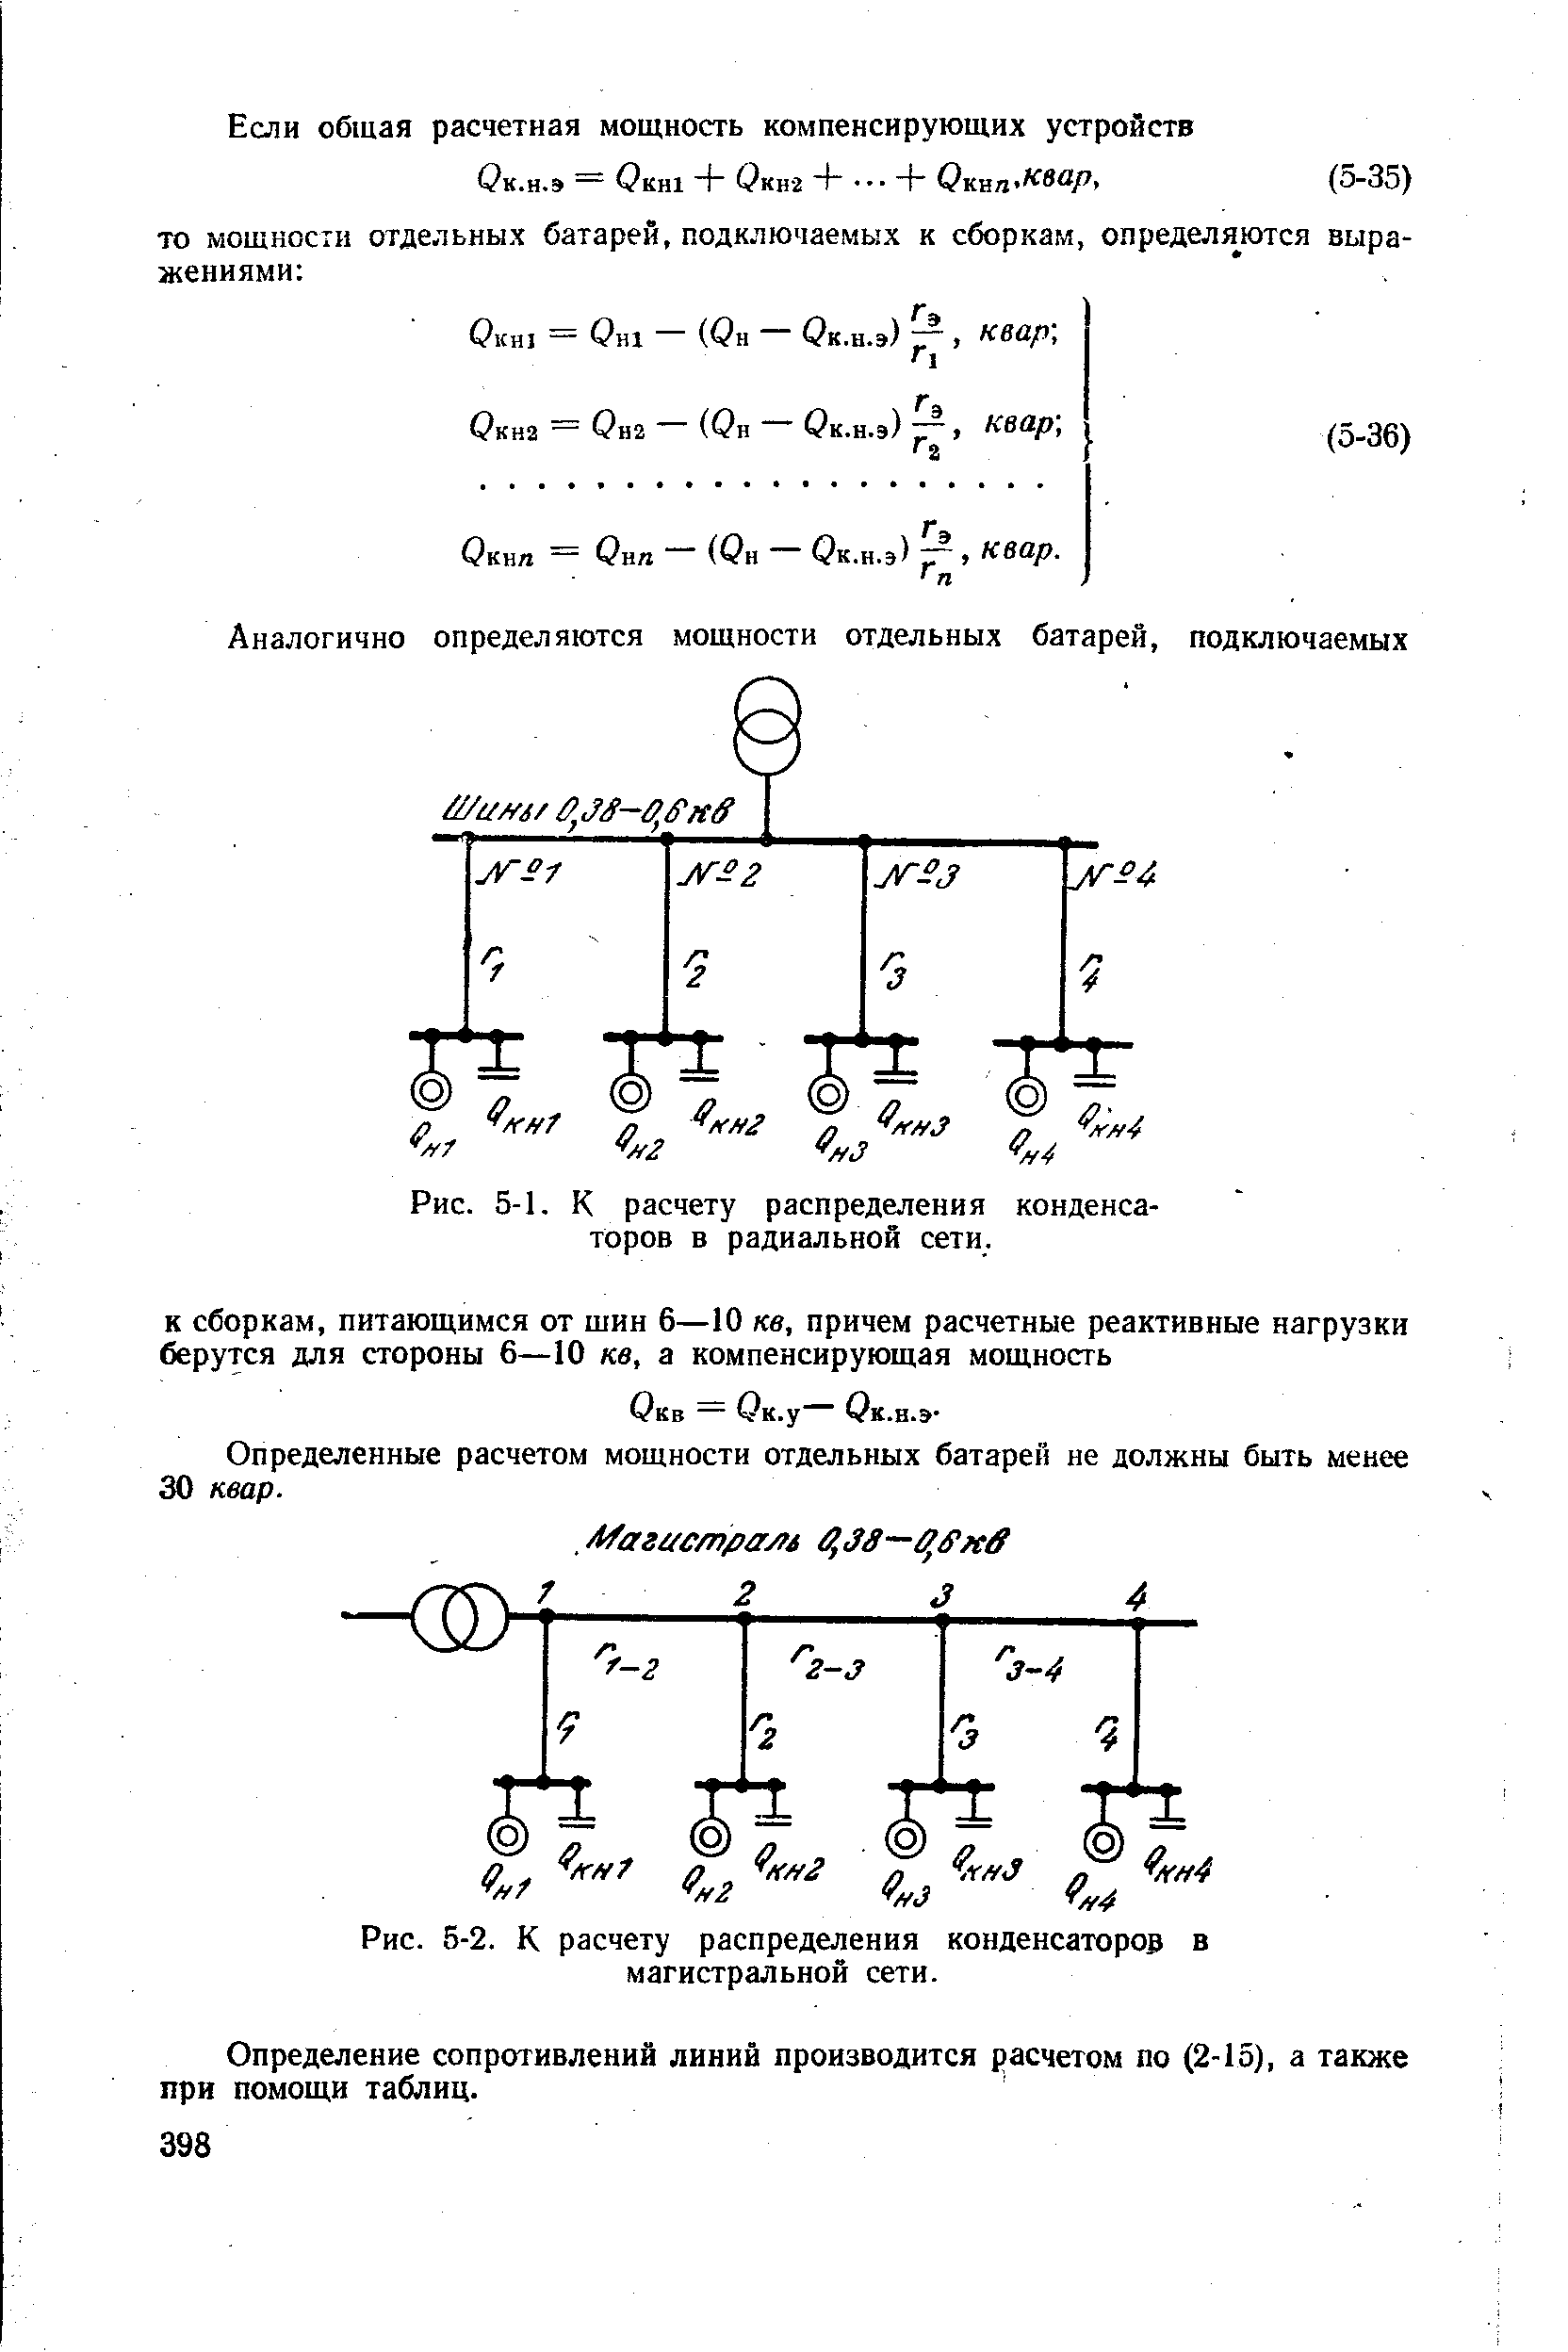 Рис. 5-2. К расчету распределения конденсаторов в магистральной сети.
